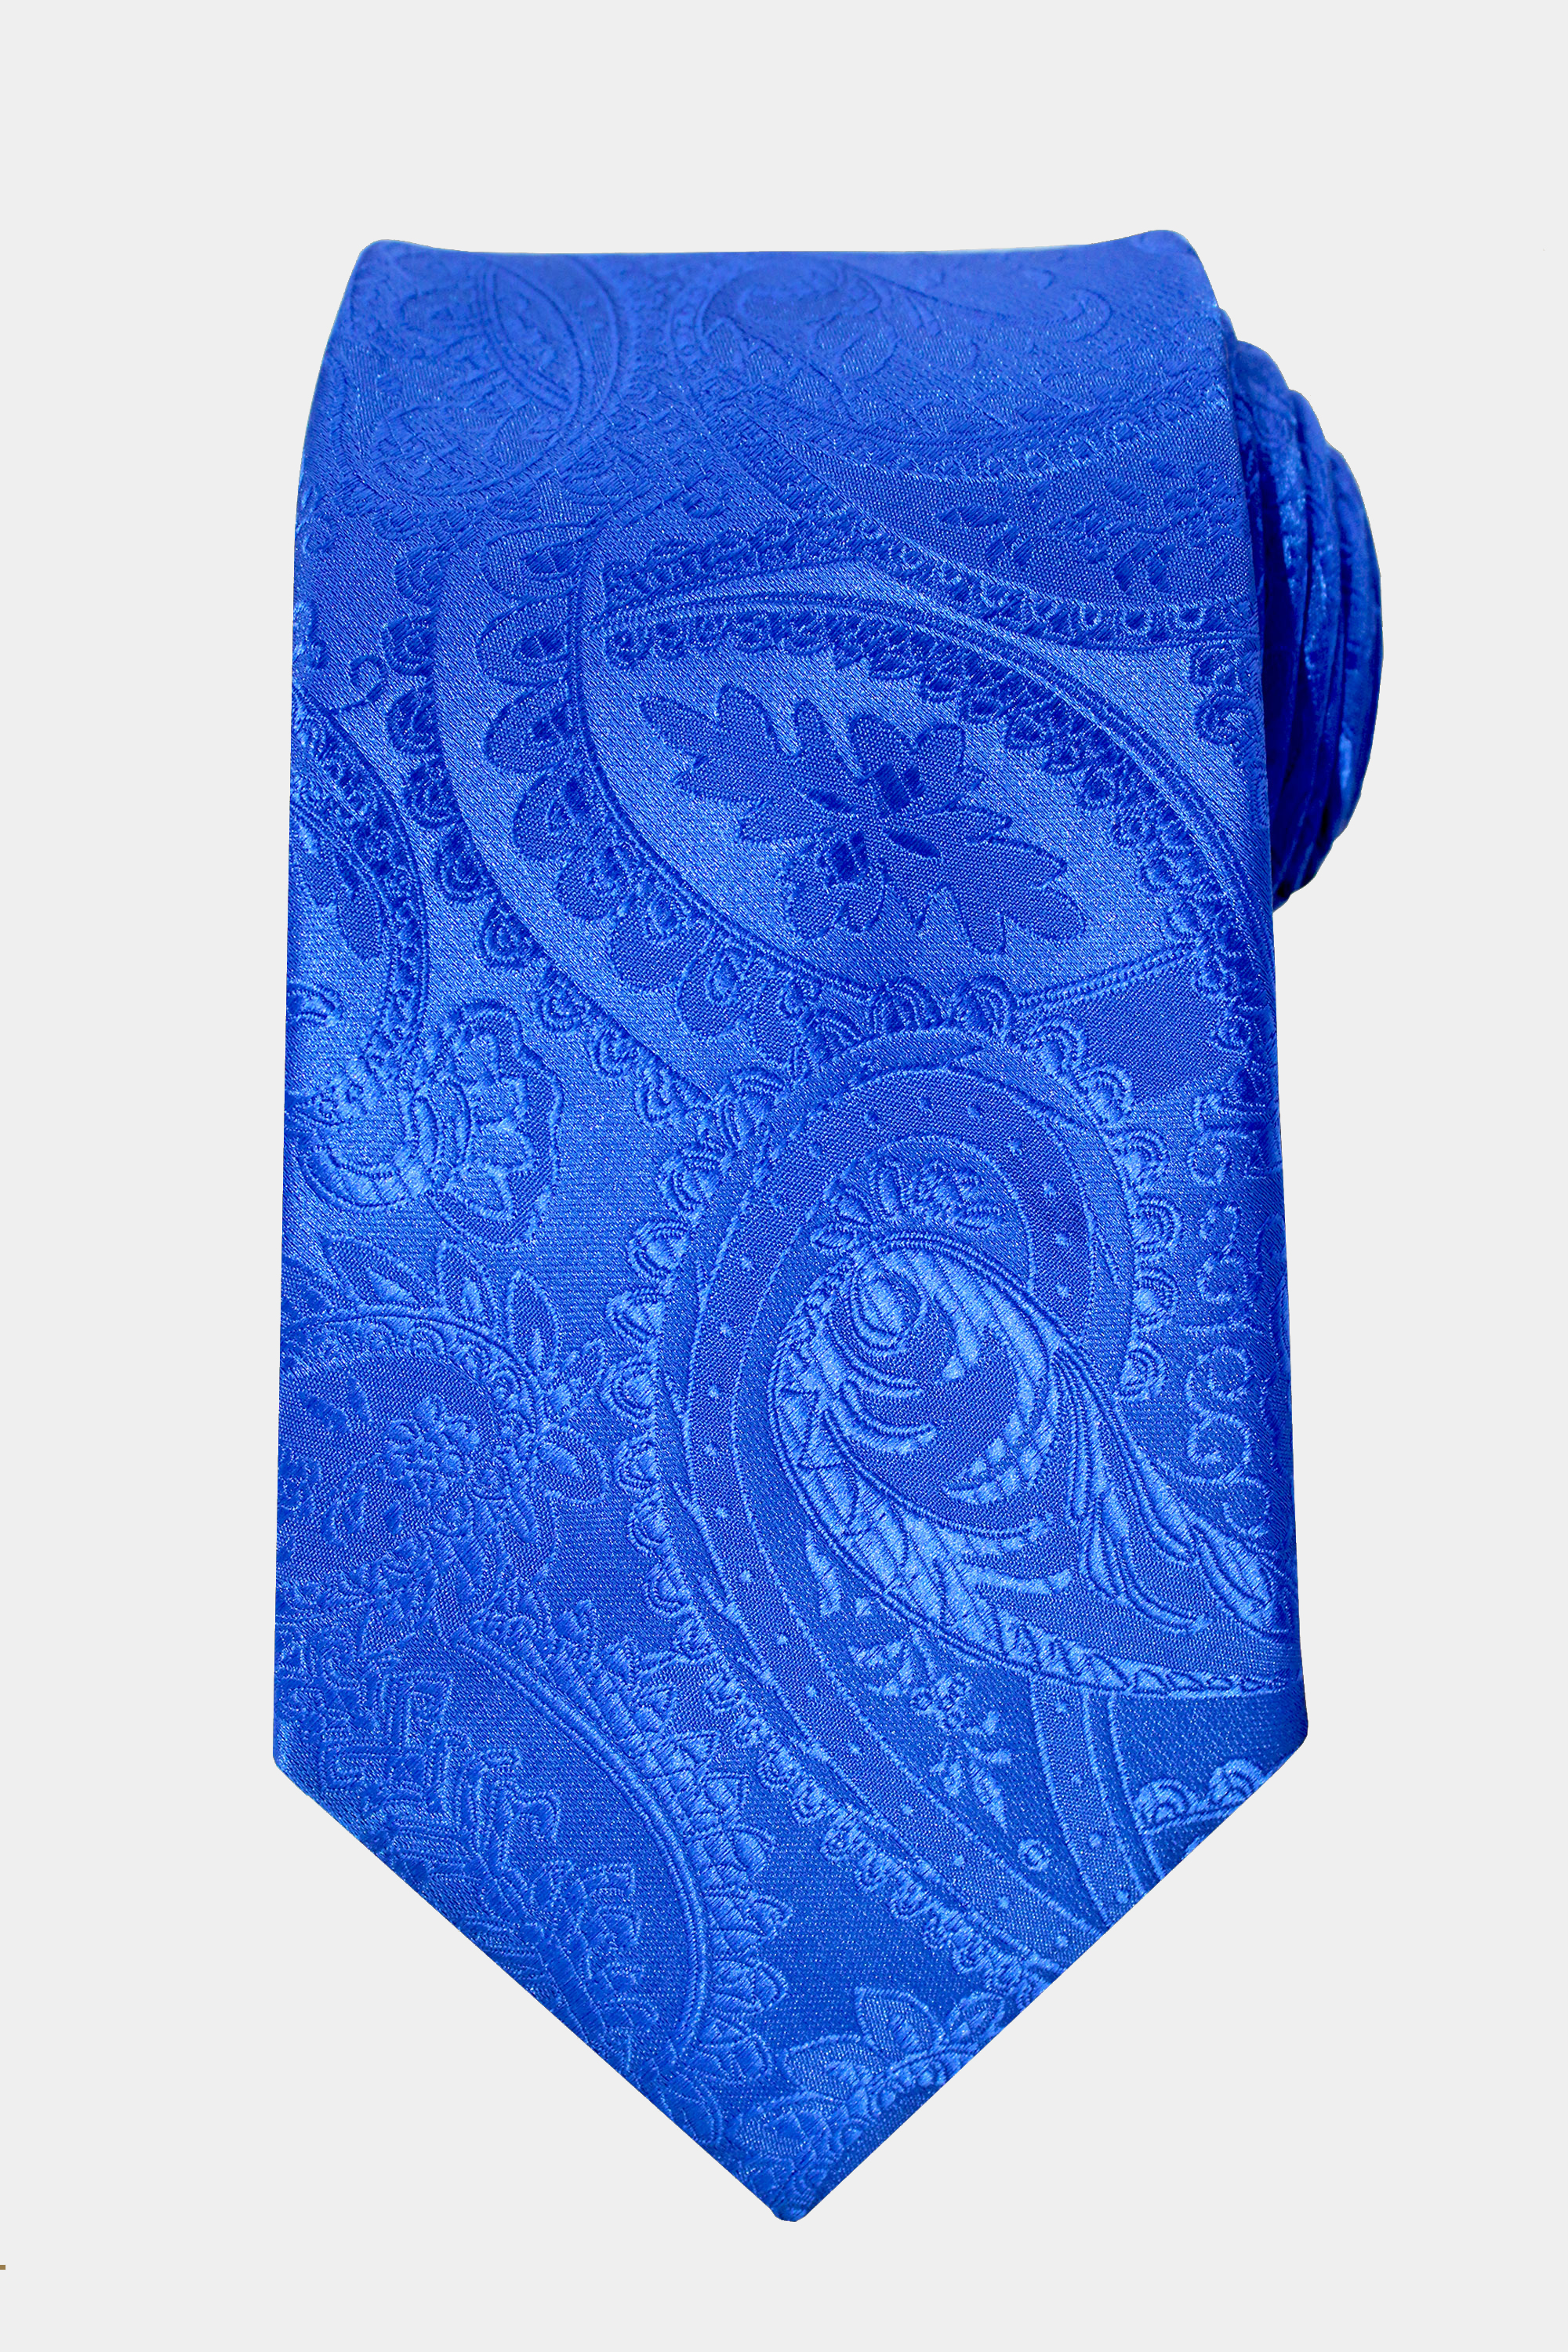 Royal-Blue-Paisley-Tie-from-Gentlemansguru.com_